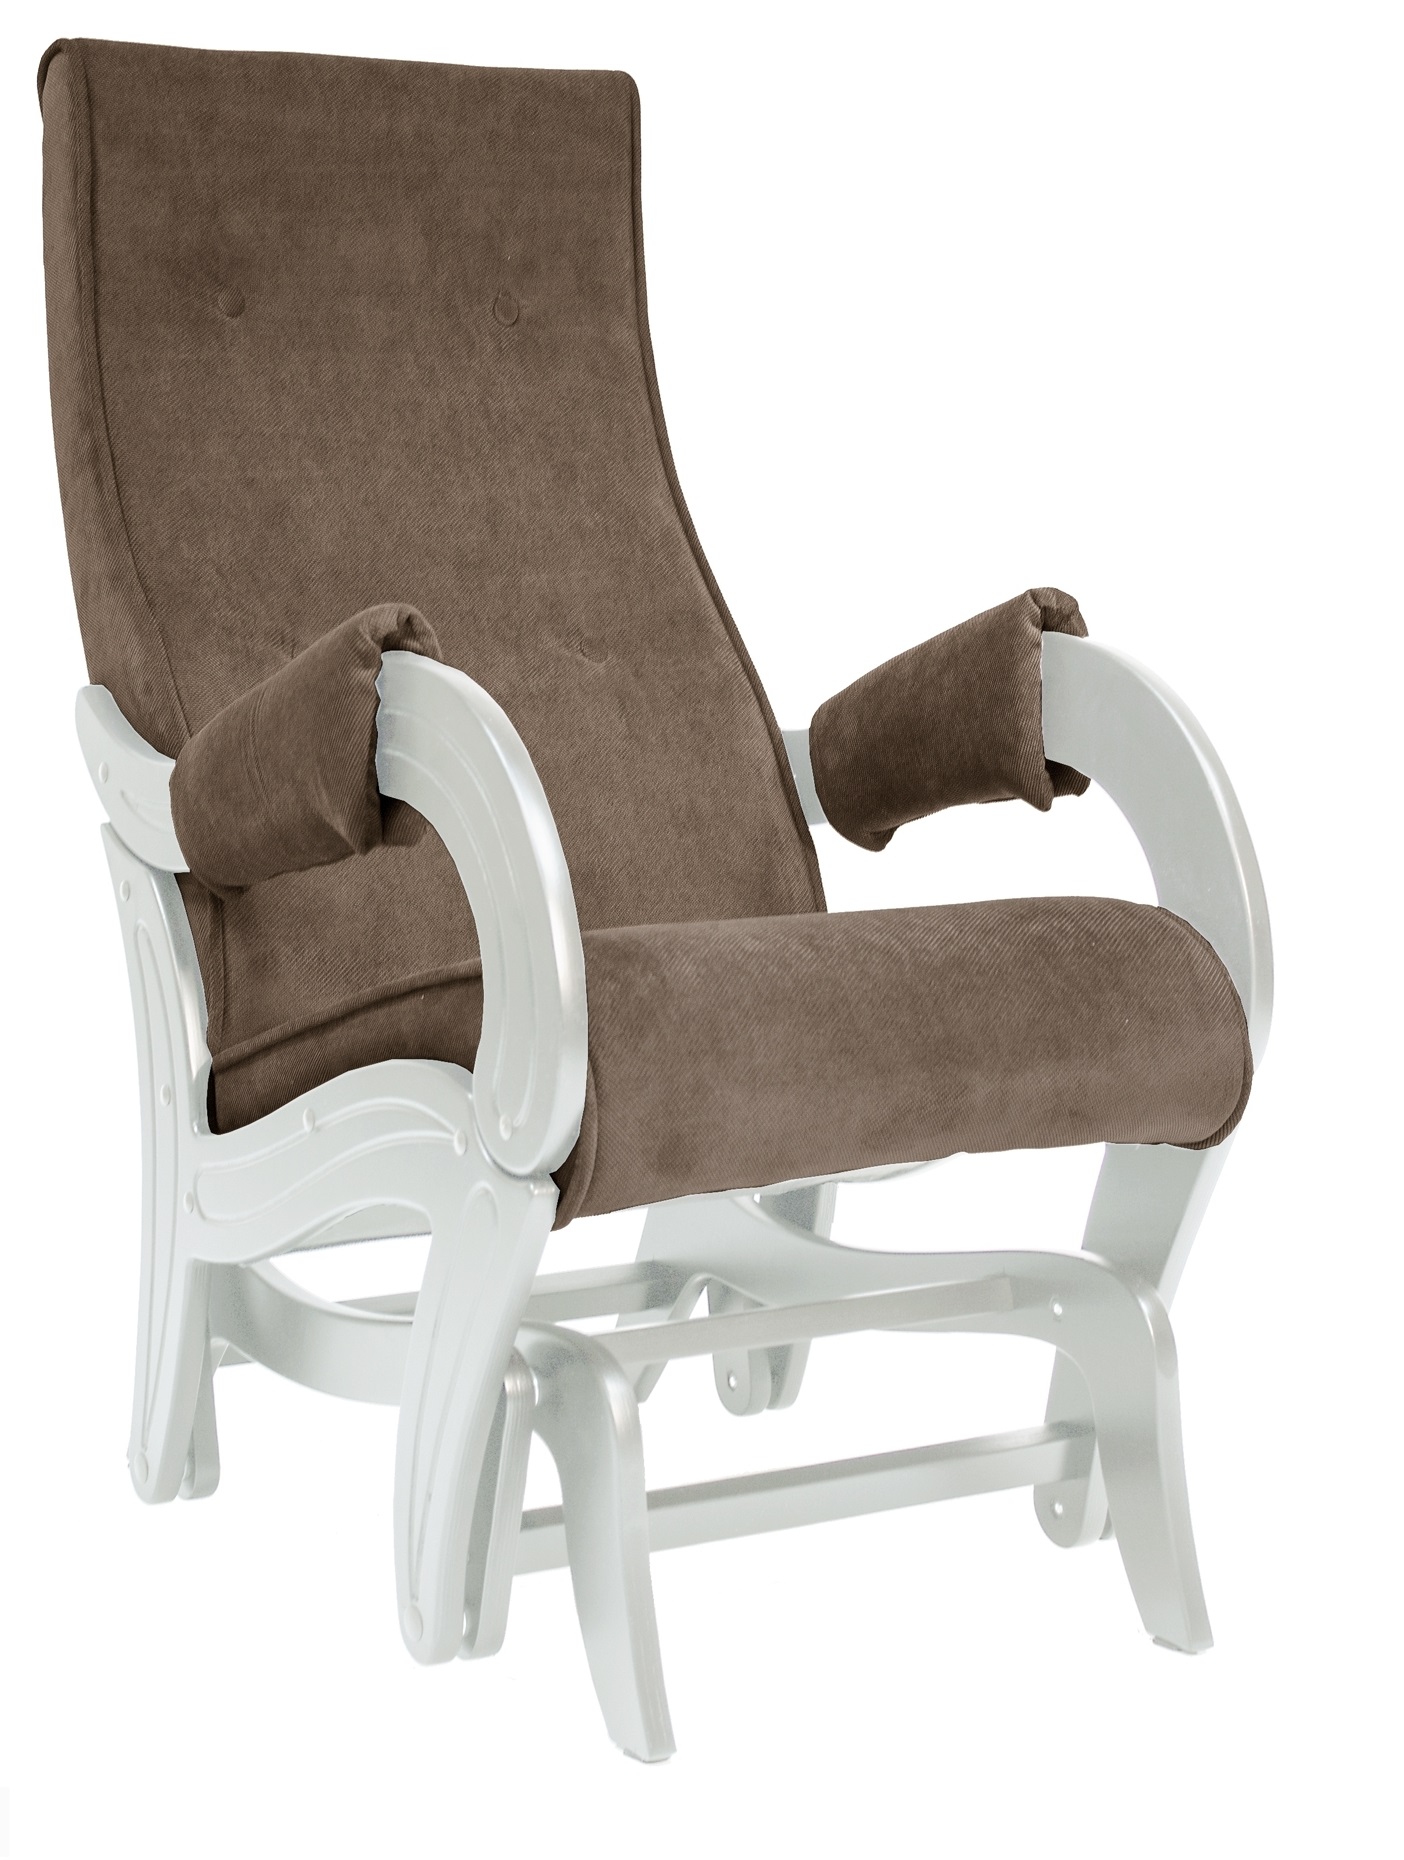 Кресло-качалка глайдер модель 708 с подлокотниками фото 1